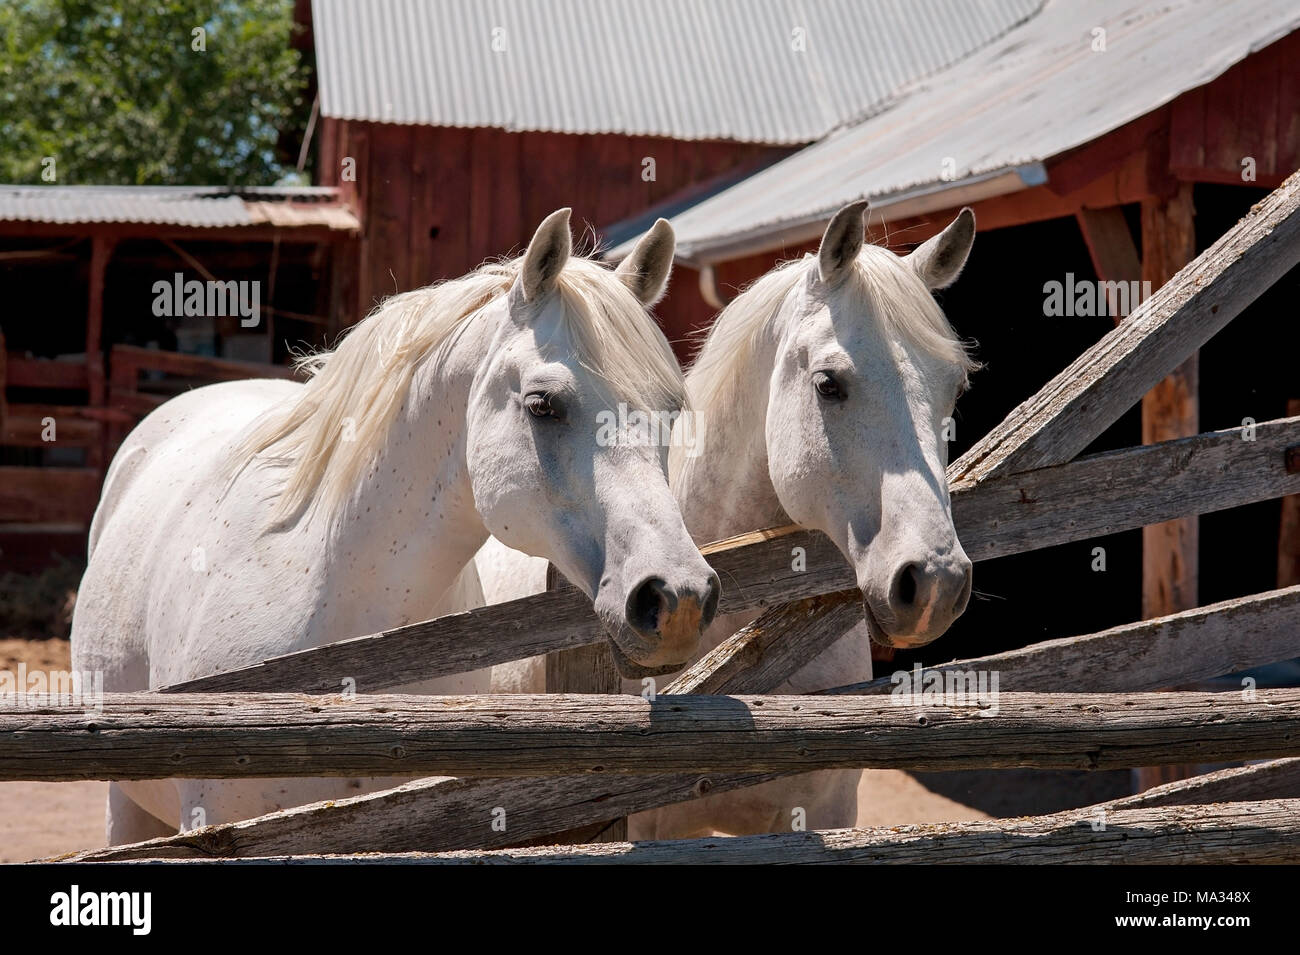 Zwei weisse, arabische Pferde in Pen stand vor einer rustikalen, rote Scheune. Stockfoto